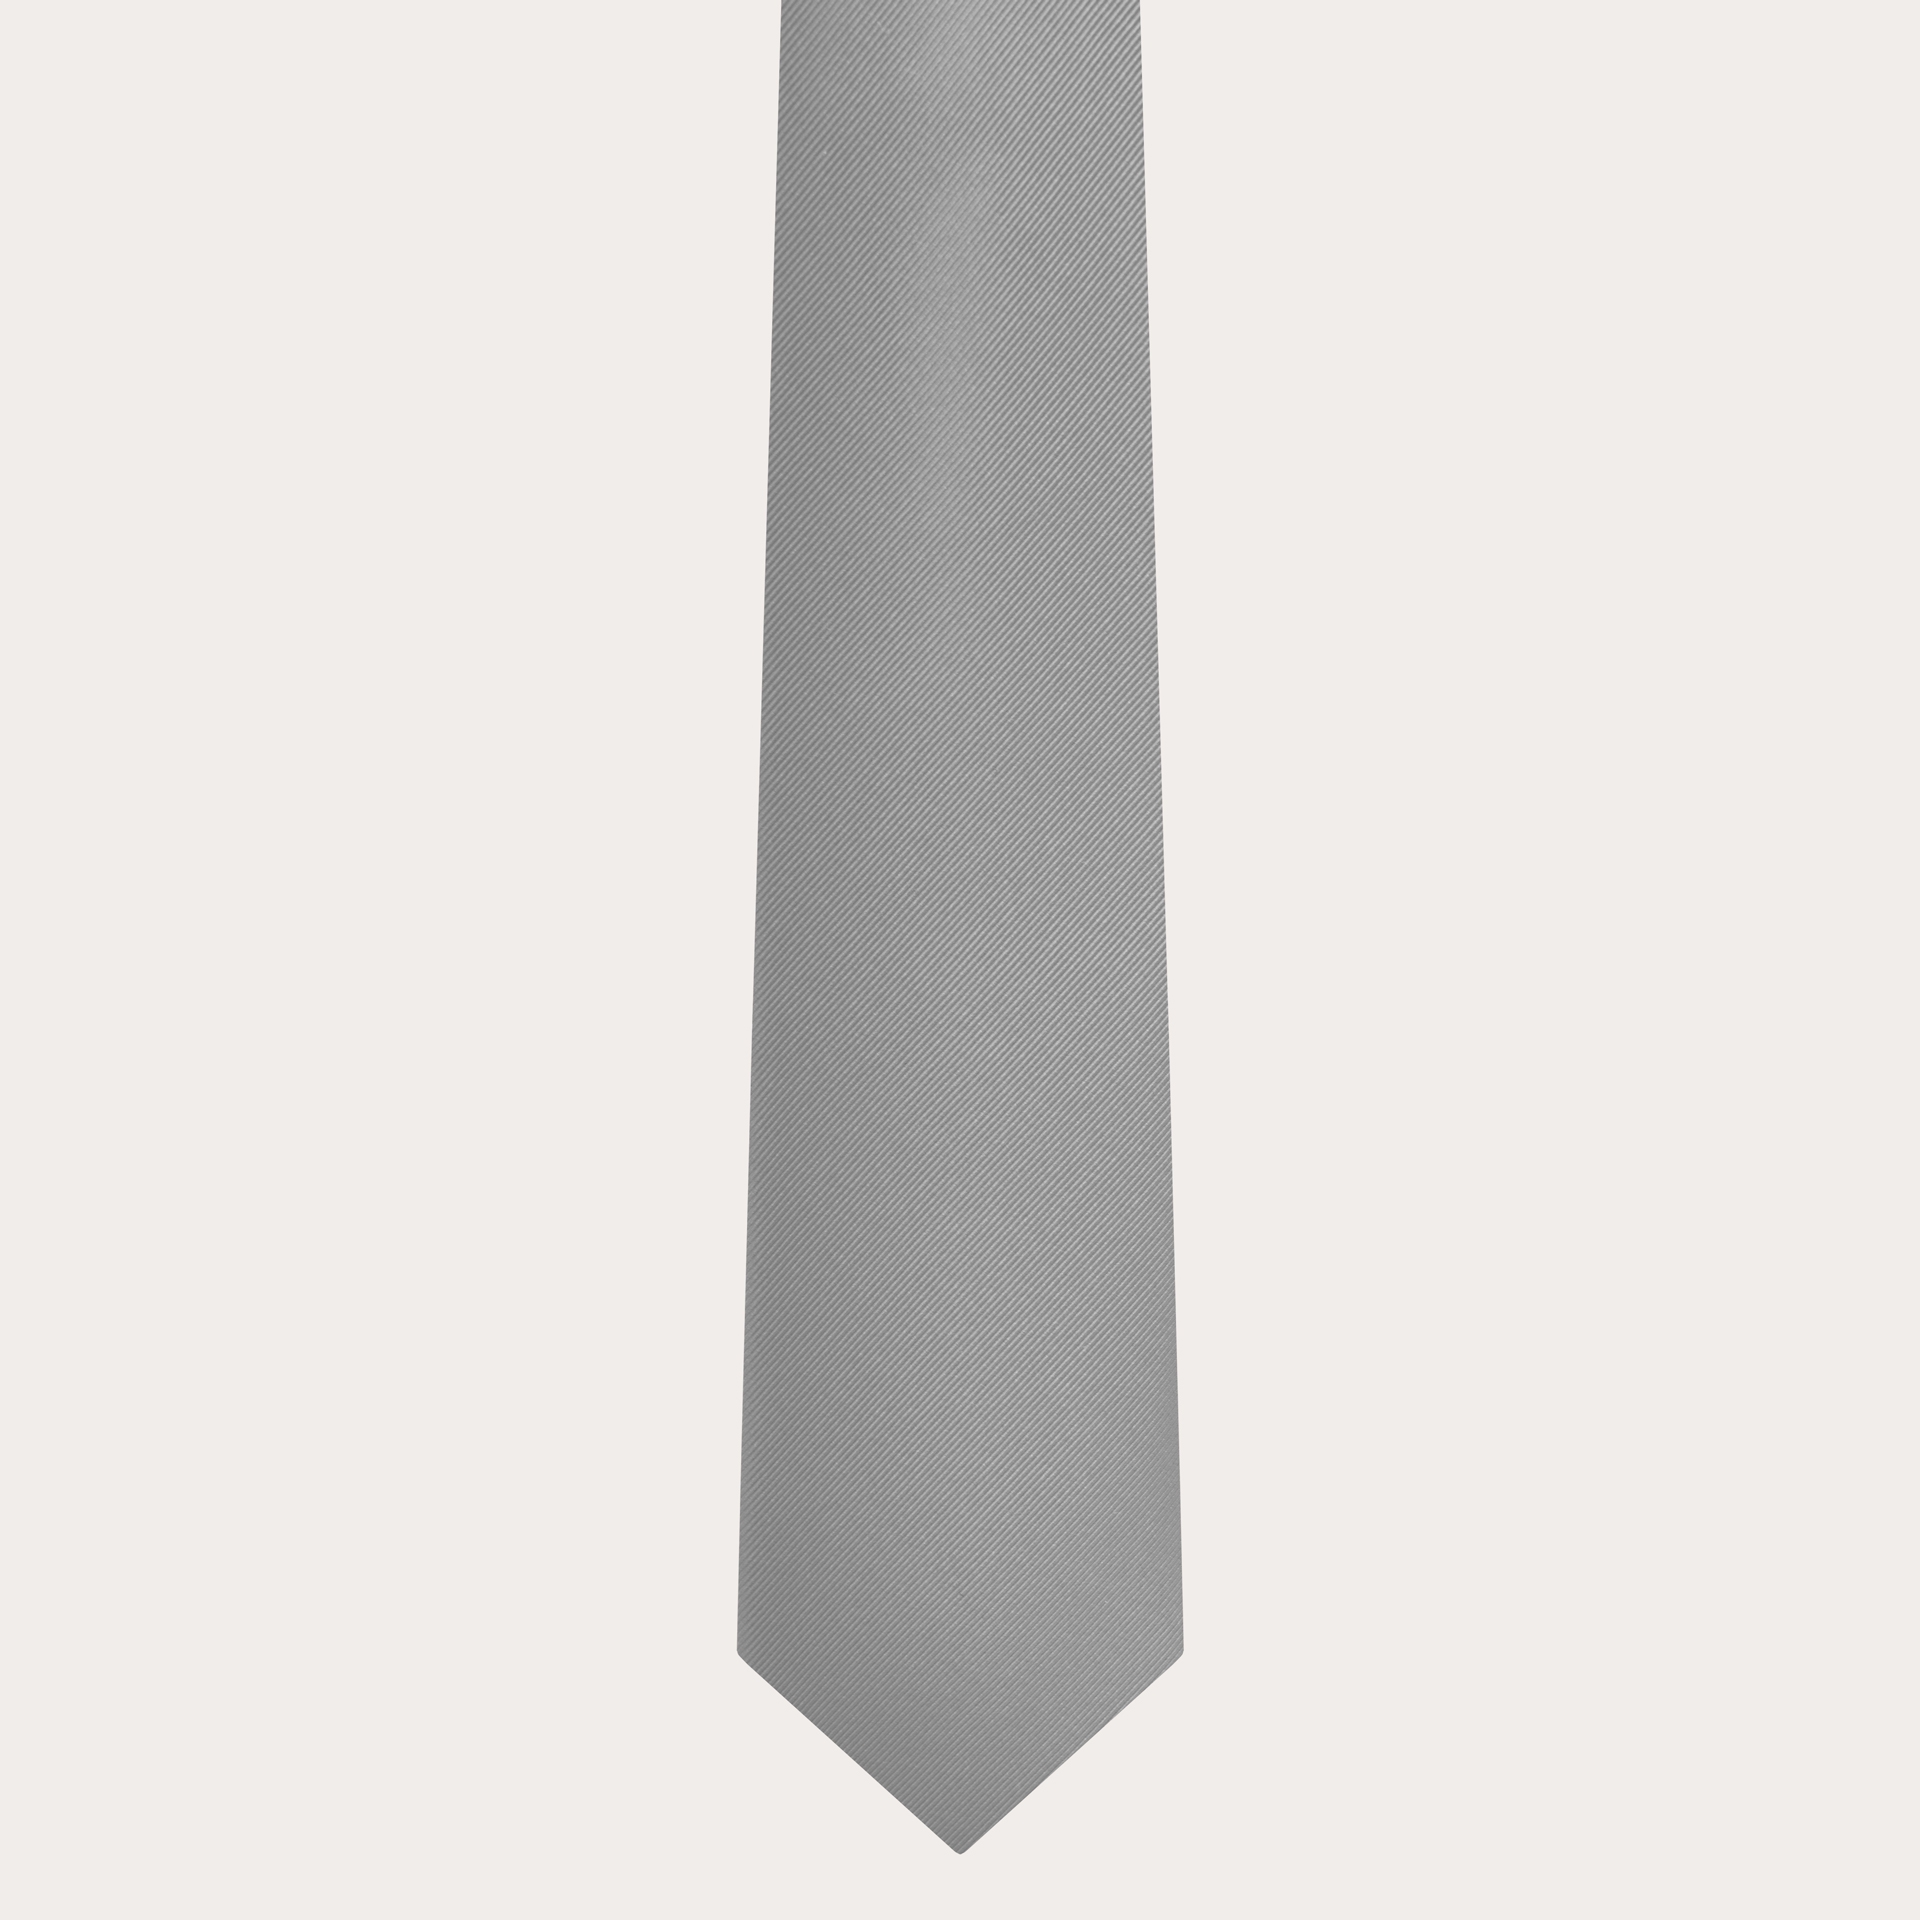 Brucle cravate artisanal gris en soie